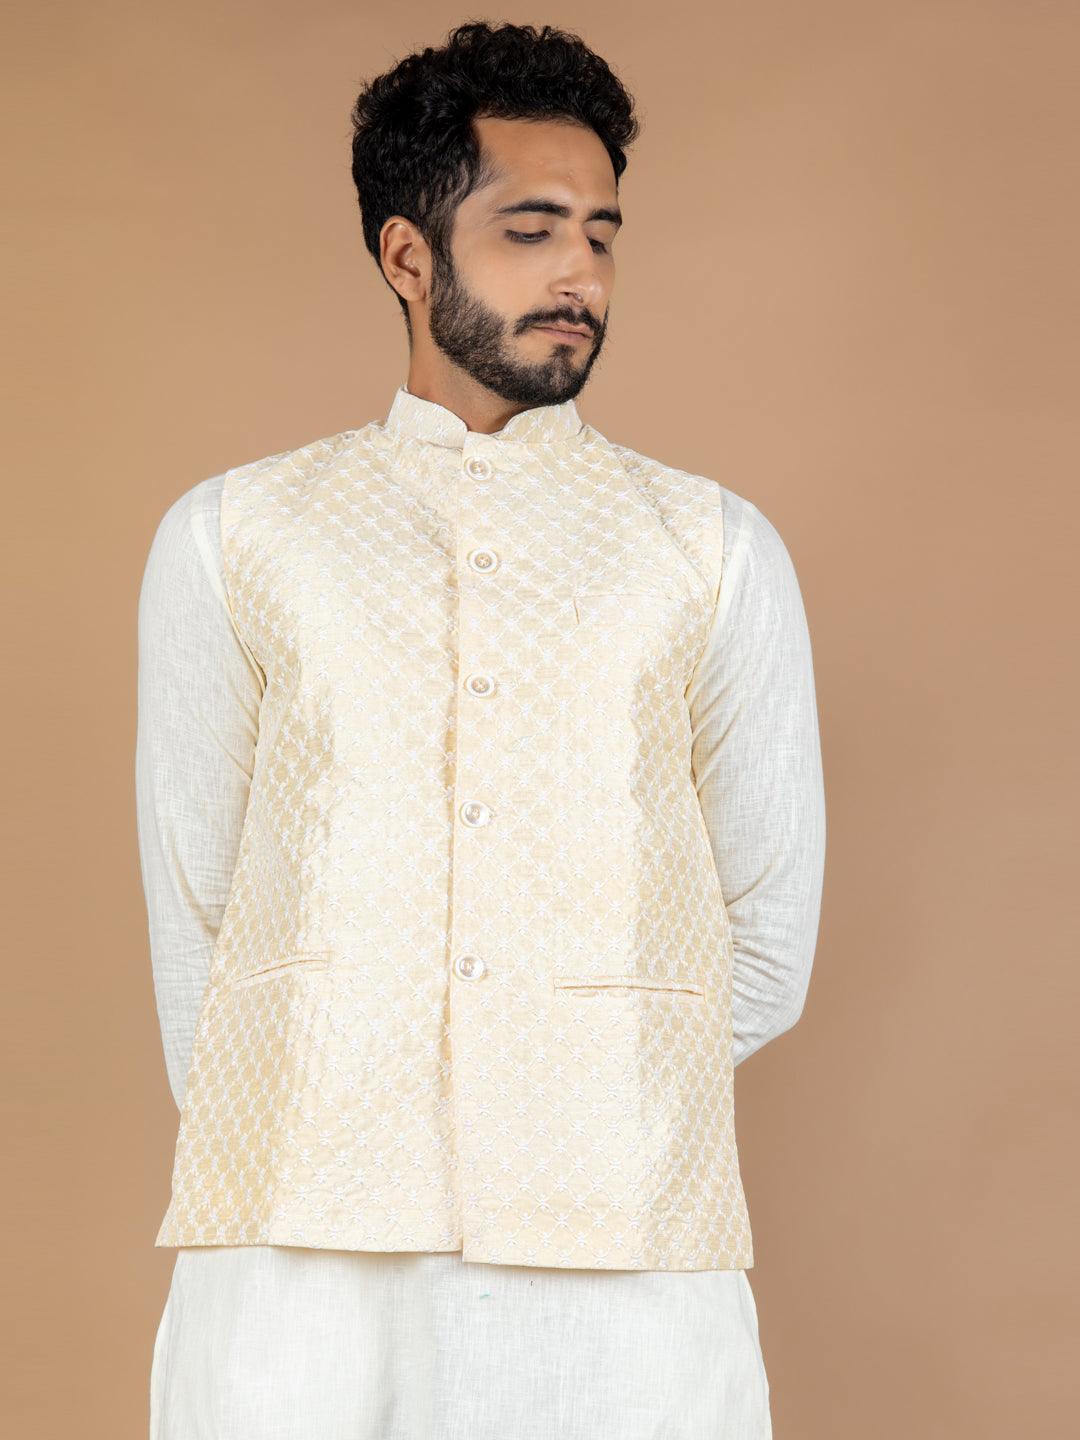 Bonenza fashion Cotton Linen Nehru Cut Jackets at Rs 400/piece in Delhi |  ID: 16715498573